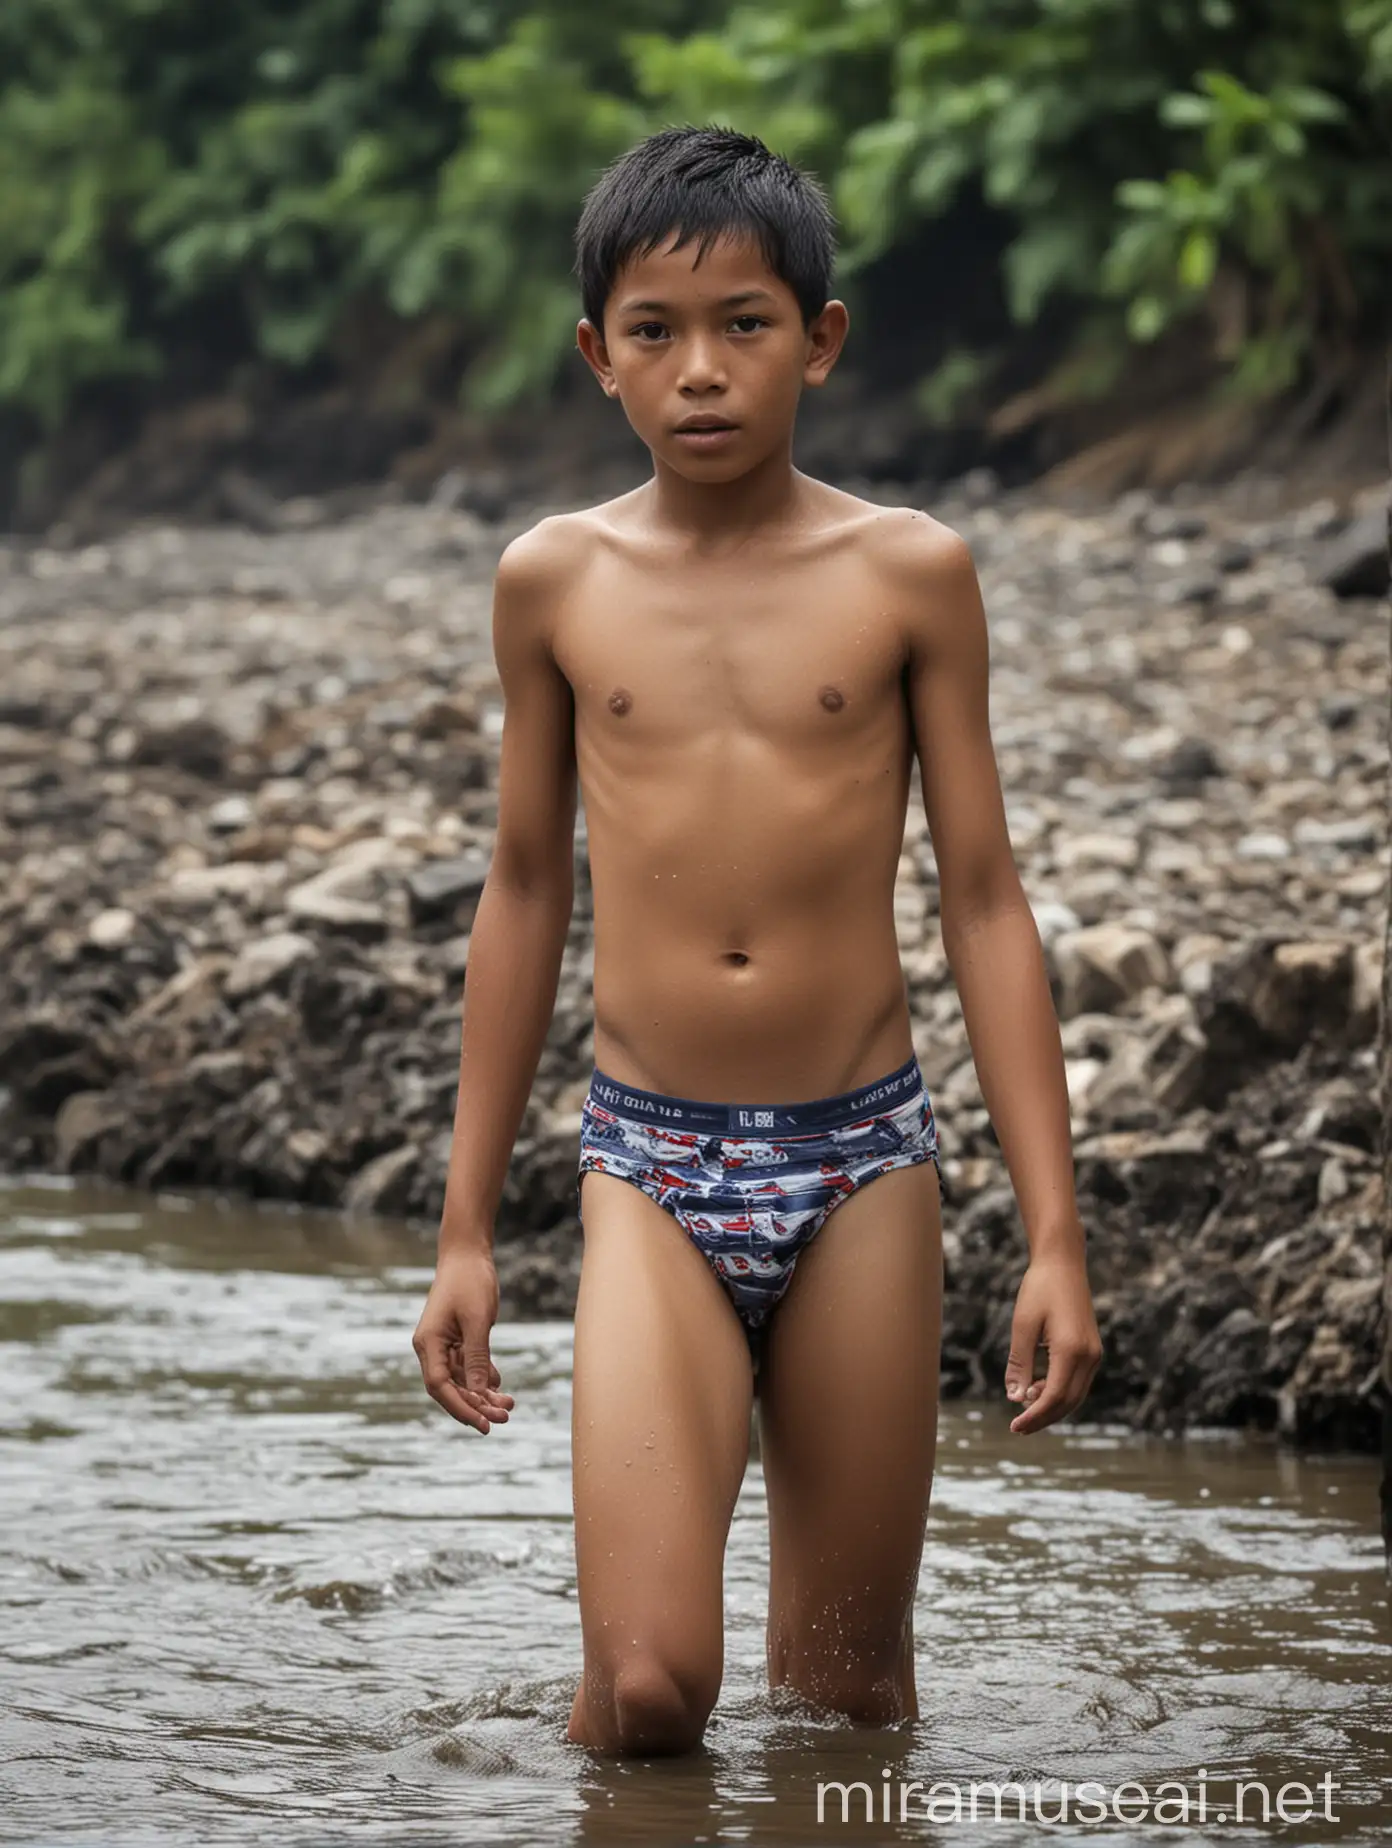 Indonesian Boy Enjoying River Bath in Underwear